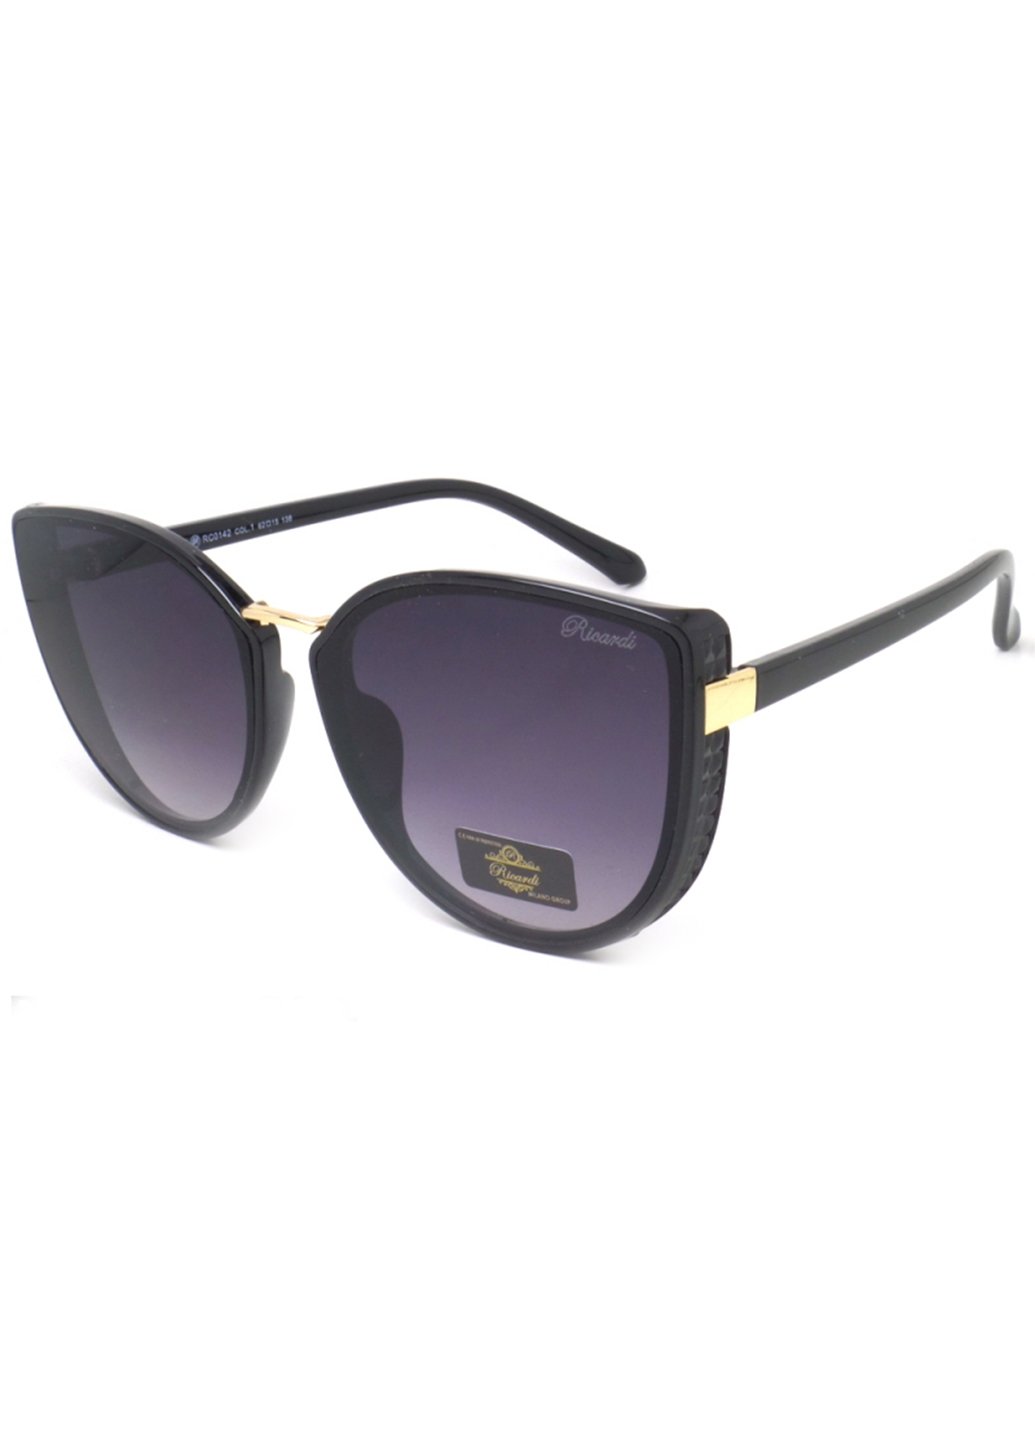 Купить Женские солнцезащитные очки Ricardi RC0142 110008 - Черный в интернет-магазине